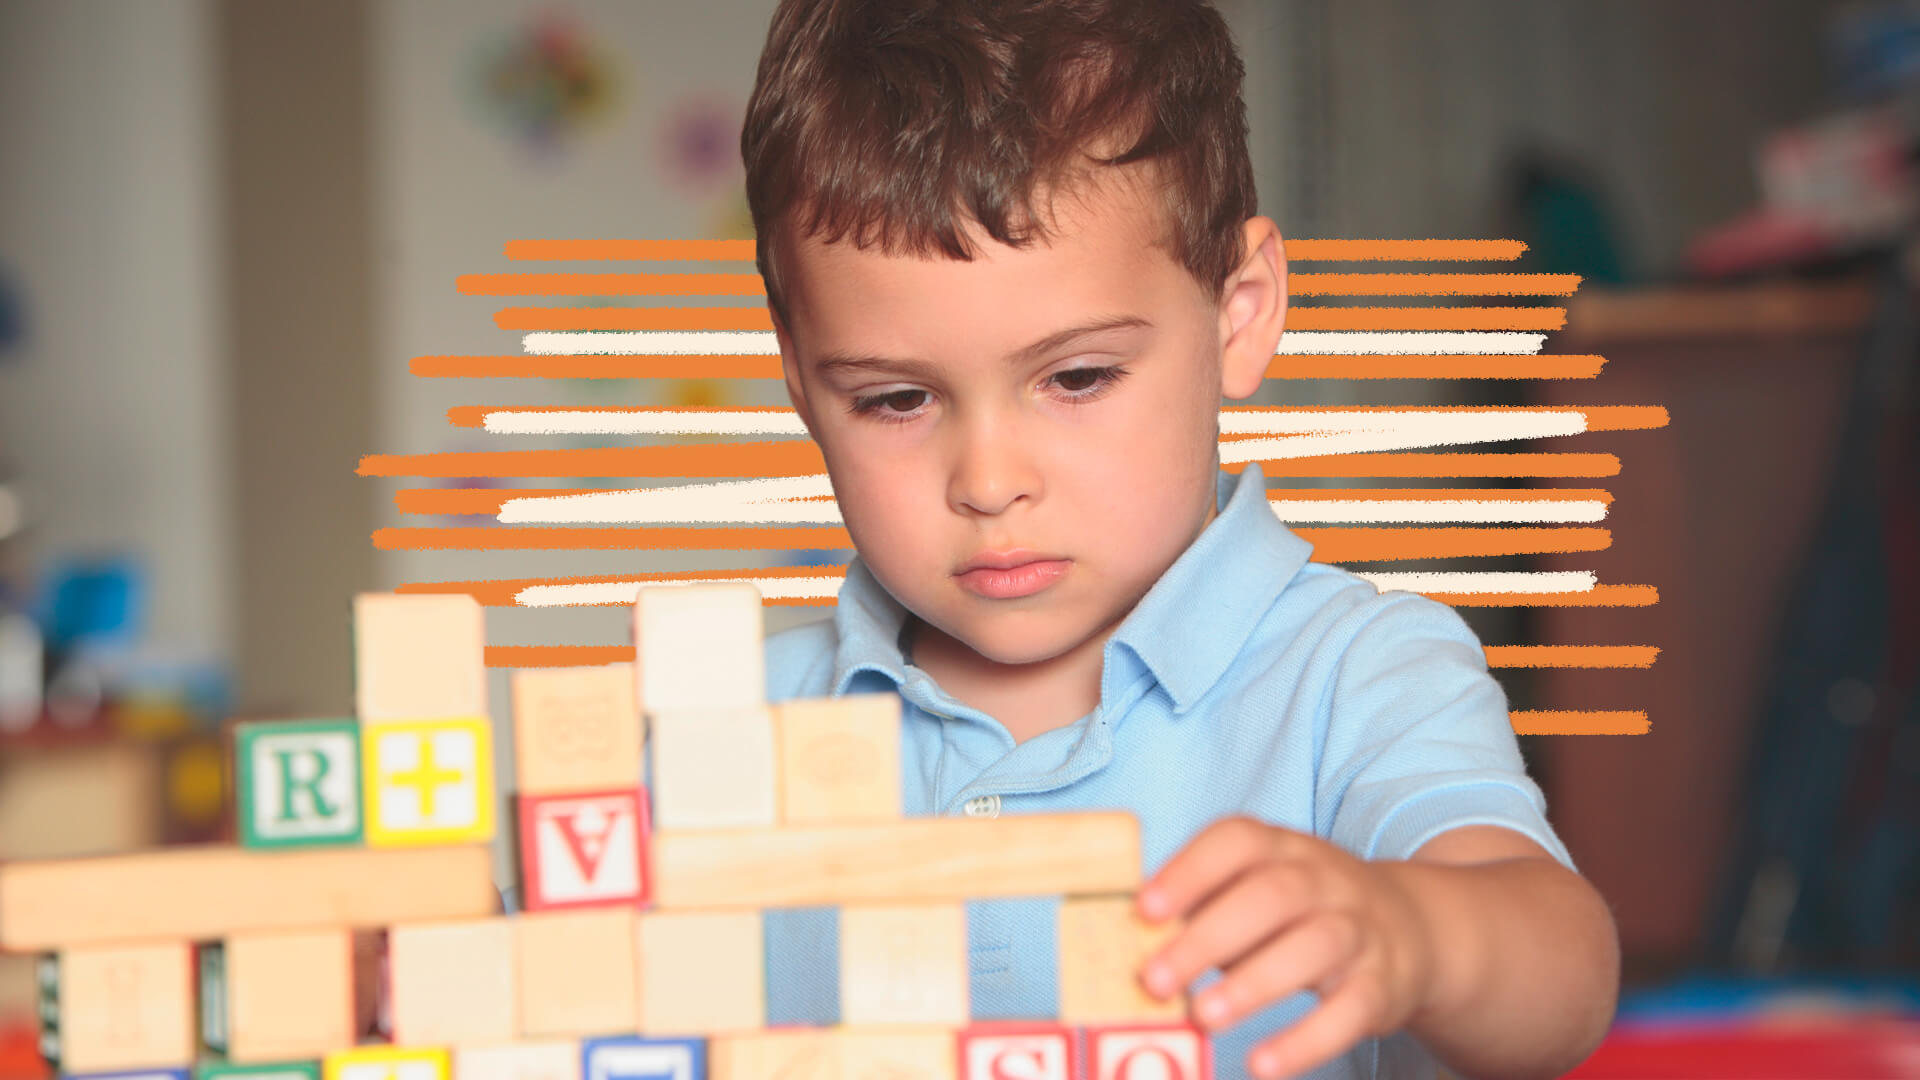 Um menino de pele clara brinca com blocos de madeira. A imagem possui intervenções de rabiscos coloridos.